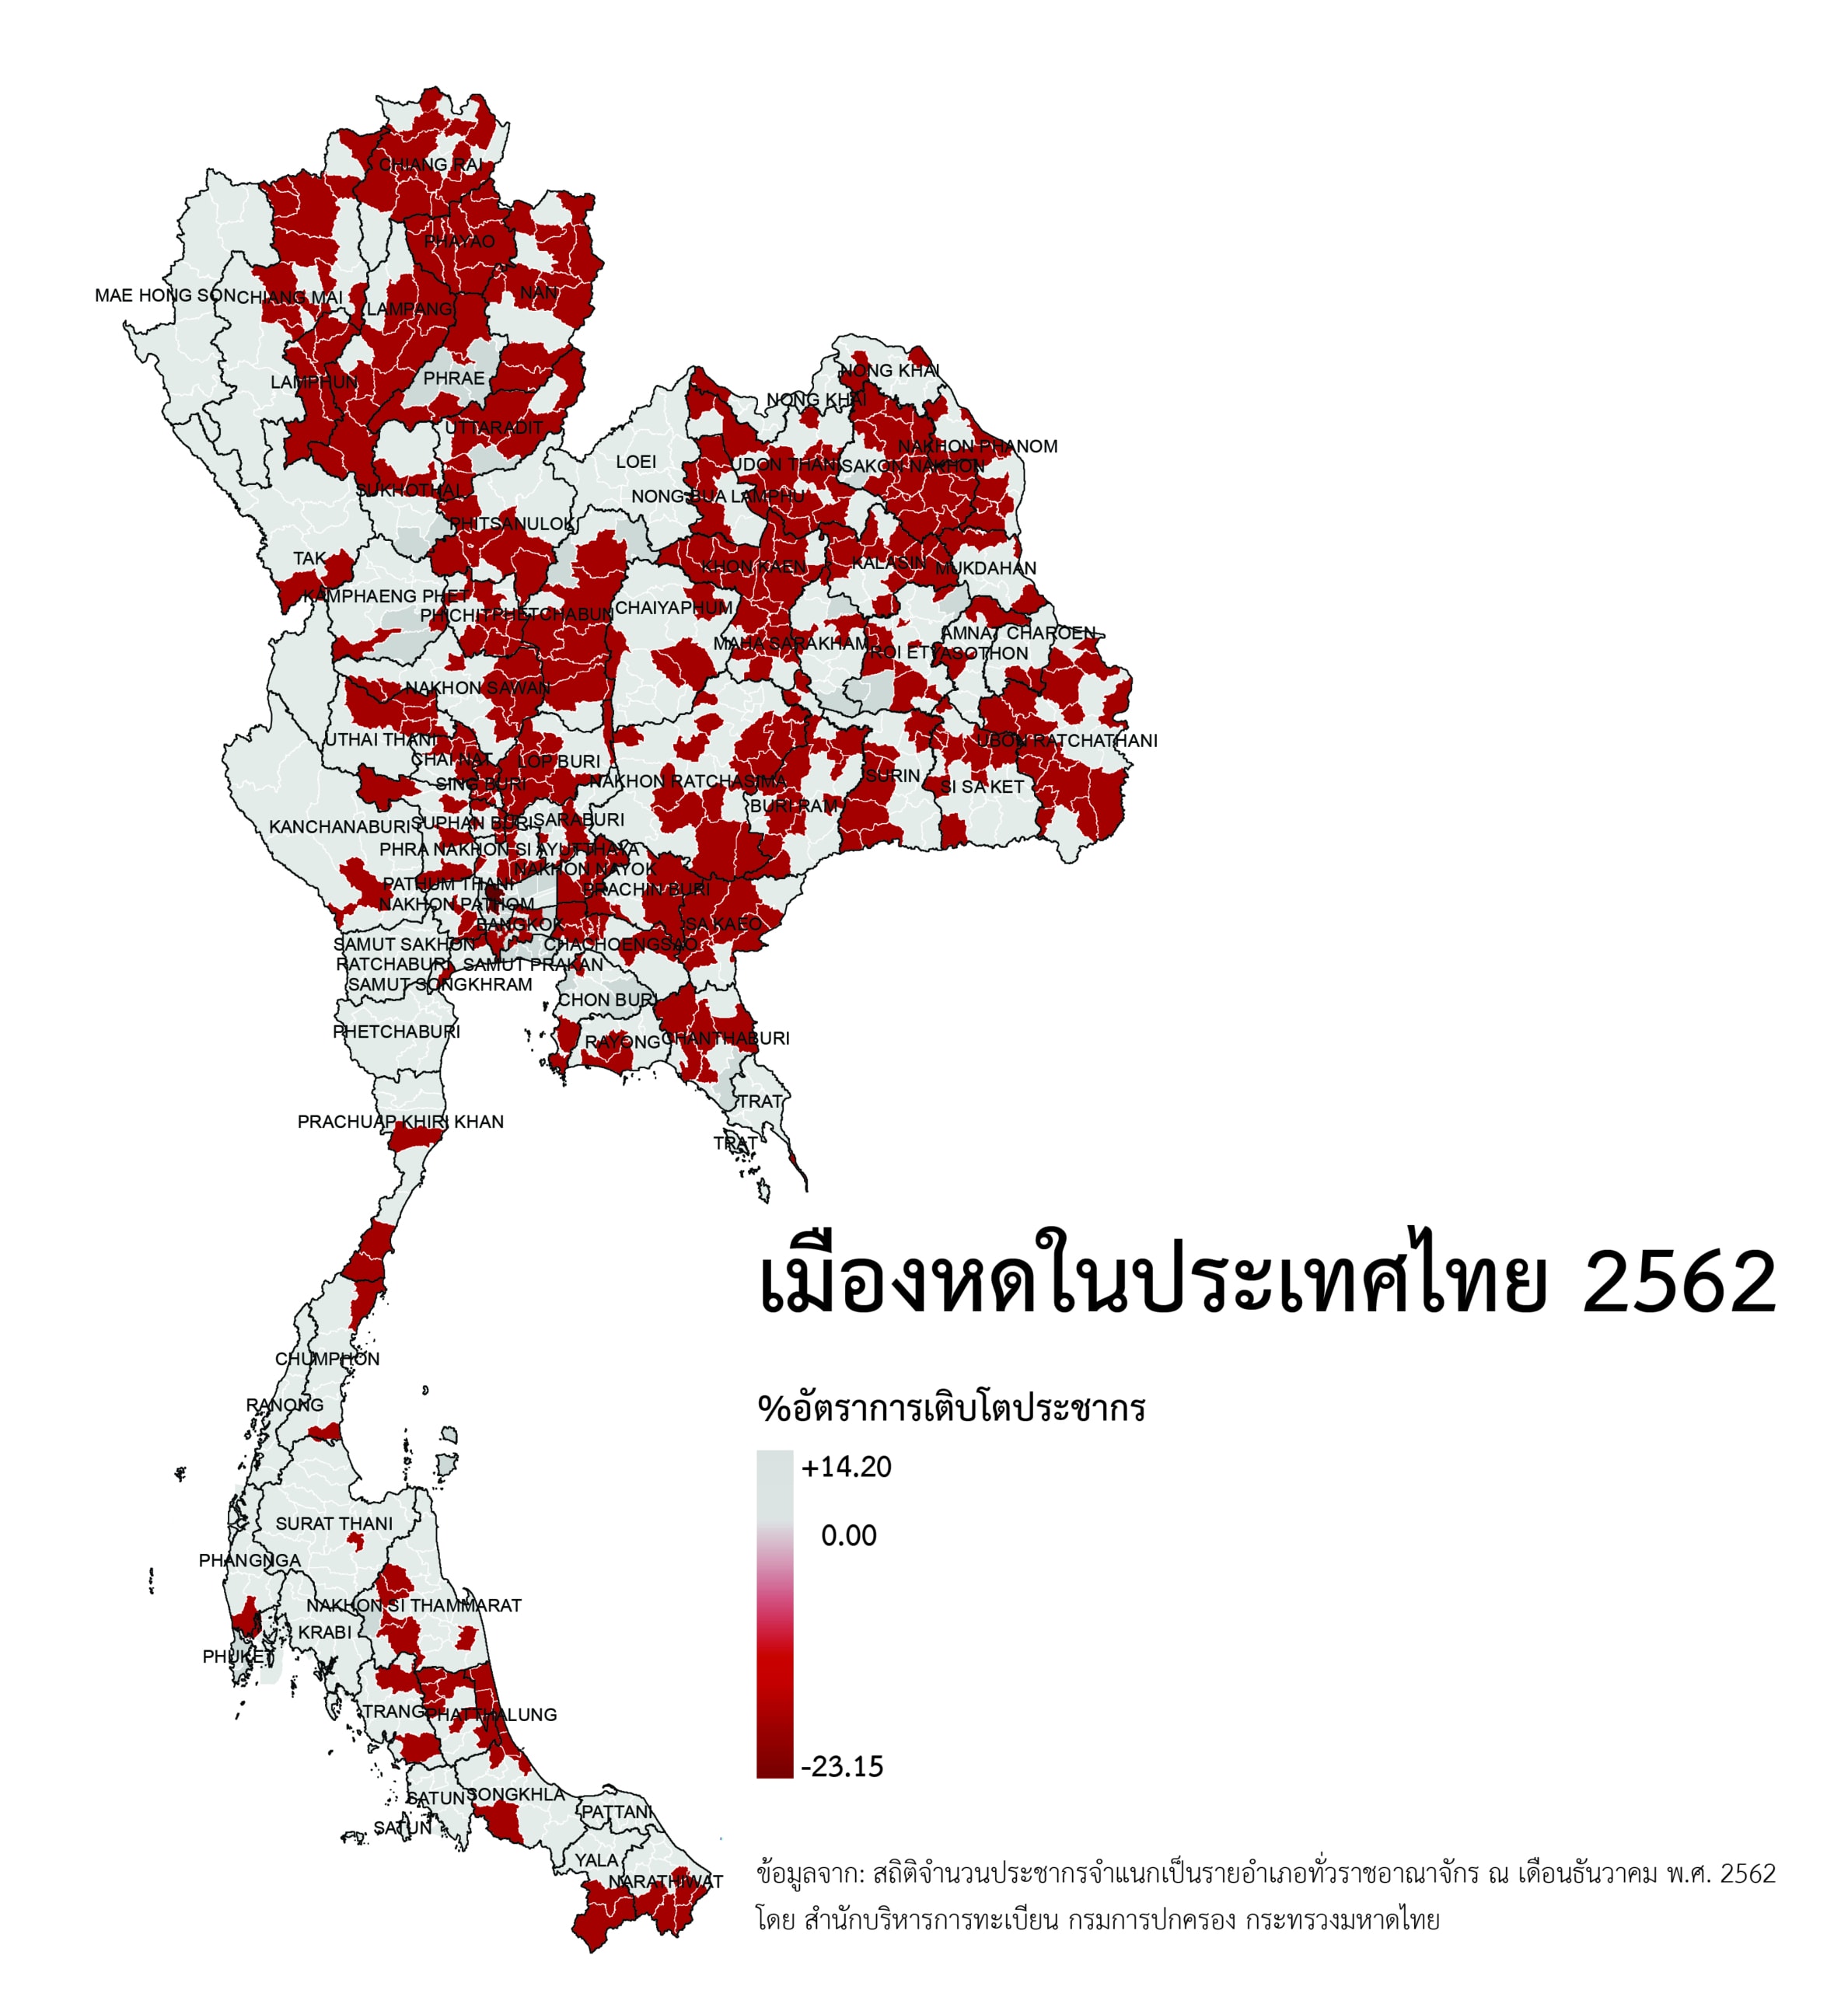 แผนที่แสดงปรากฏการณ์เมืองหดในประเทศไทย พ.ศ. 2562